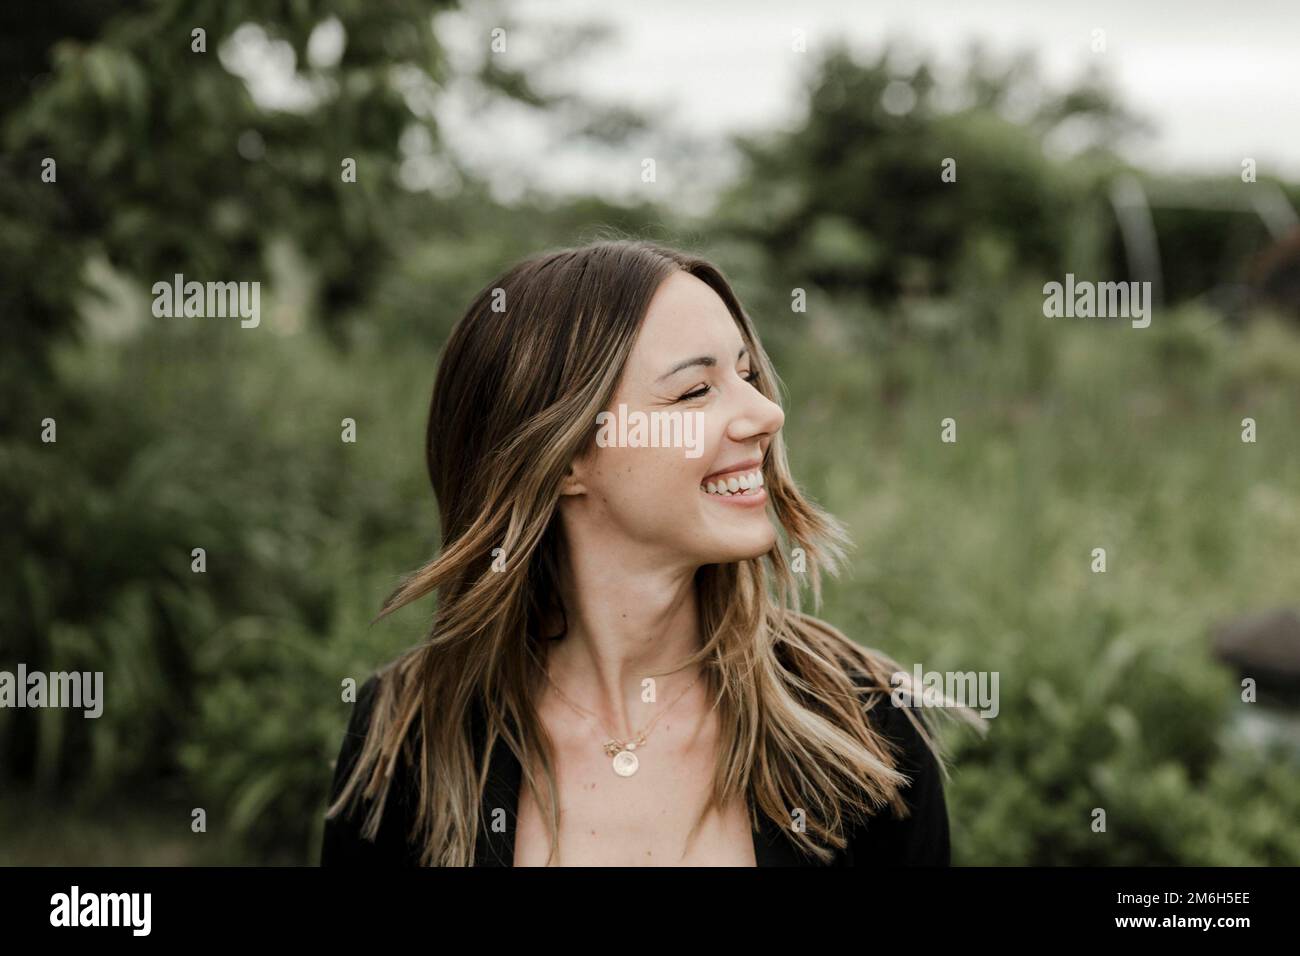 Lachende junge Frau im Porträt, 25, mit fliegenden Haaren Stockfoto